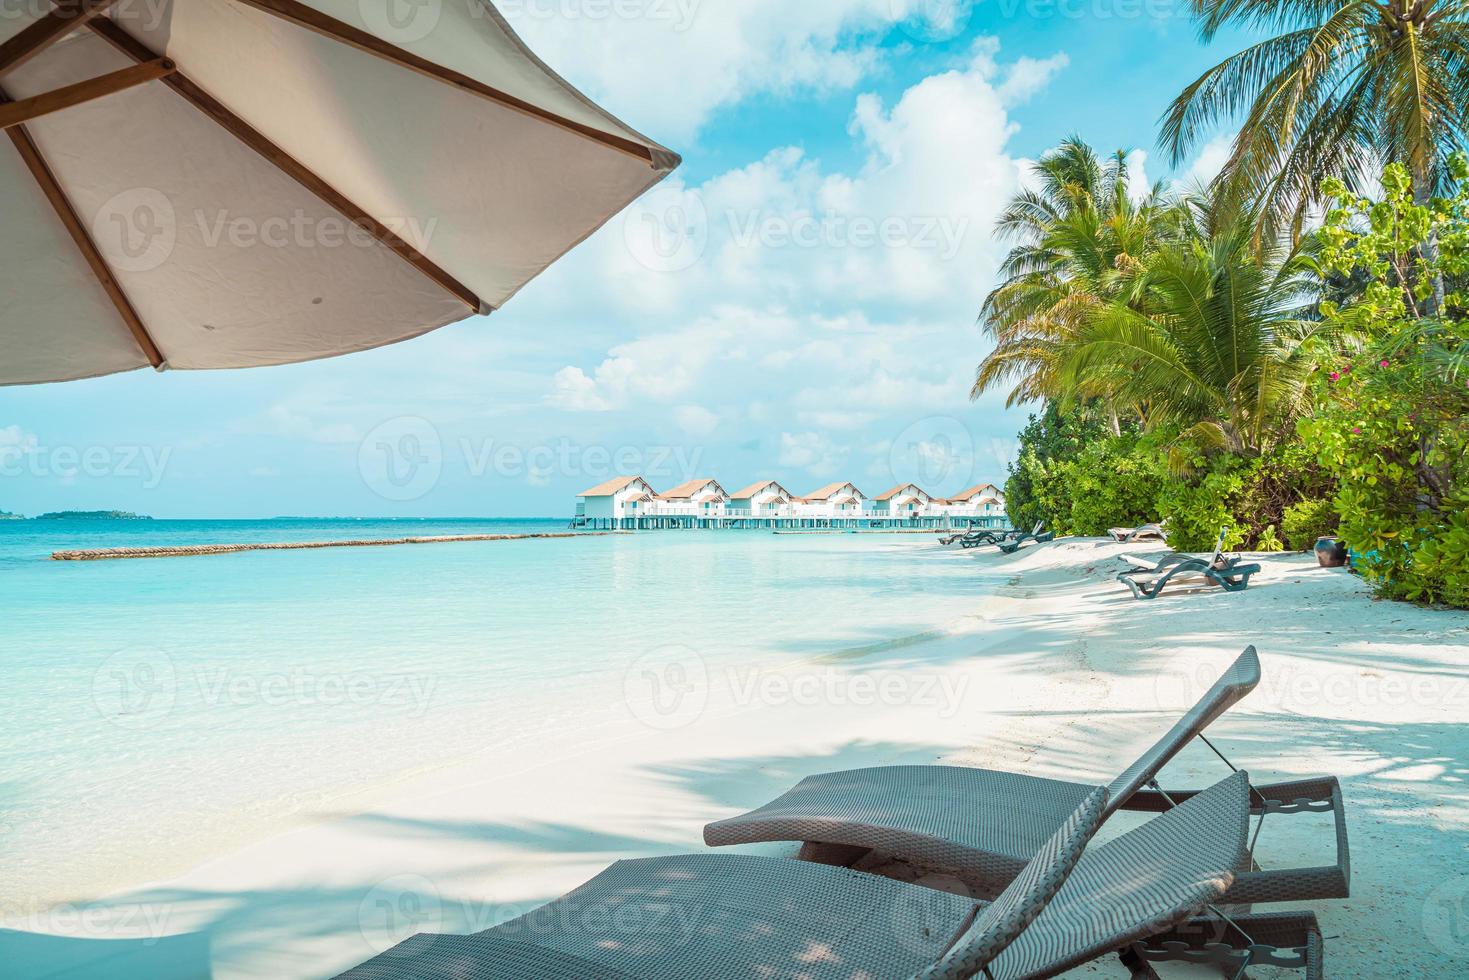 cadeiras de praia com ilha tropical resort das Maldivas e fundo do mar foto